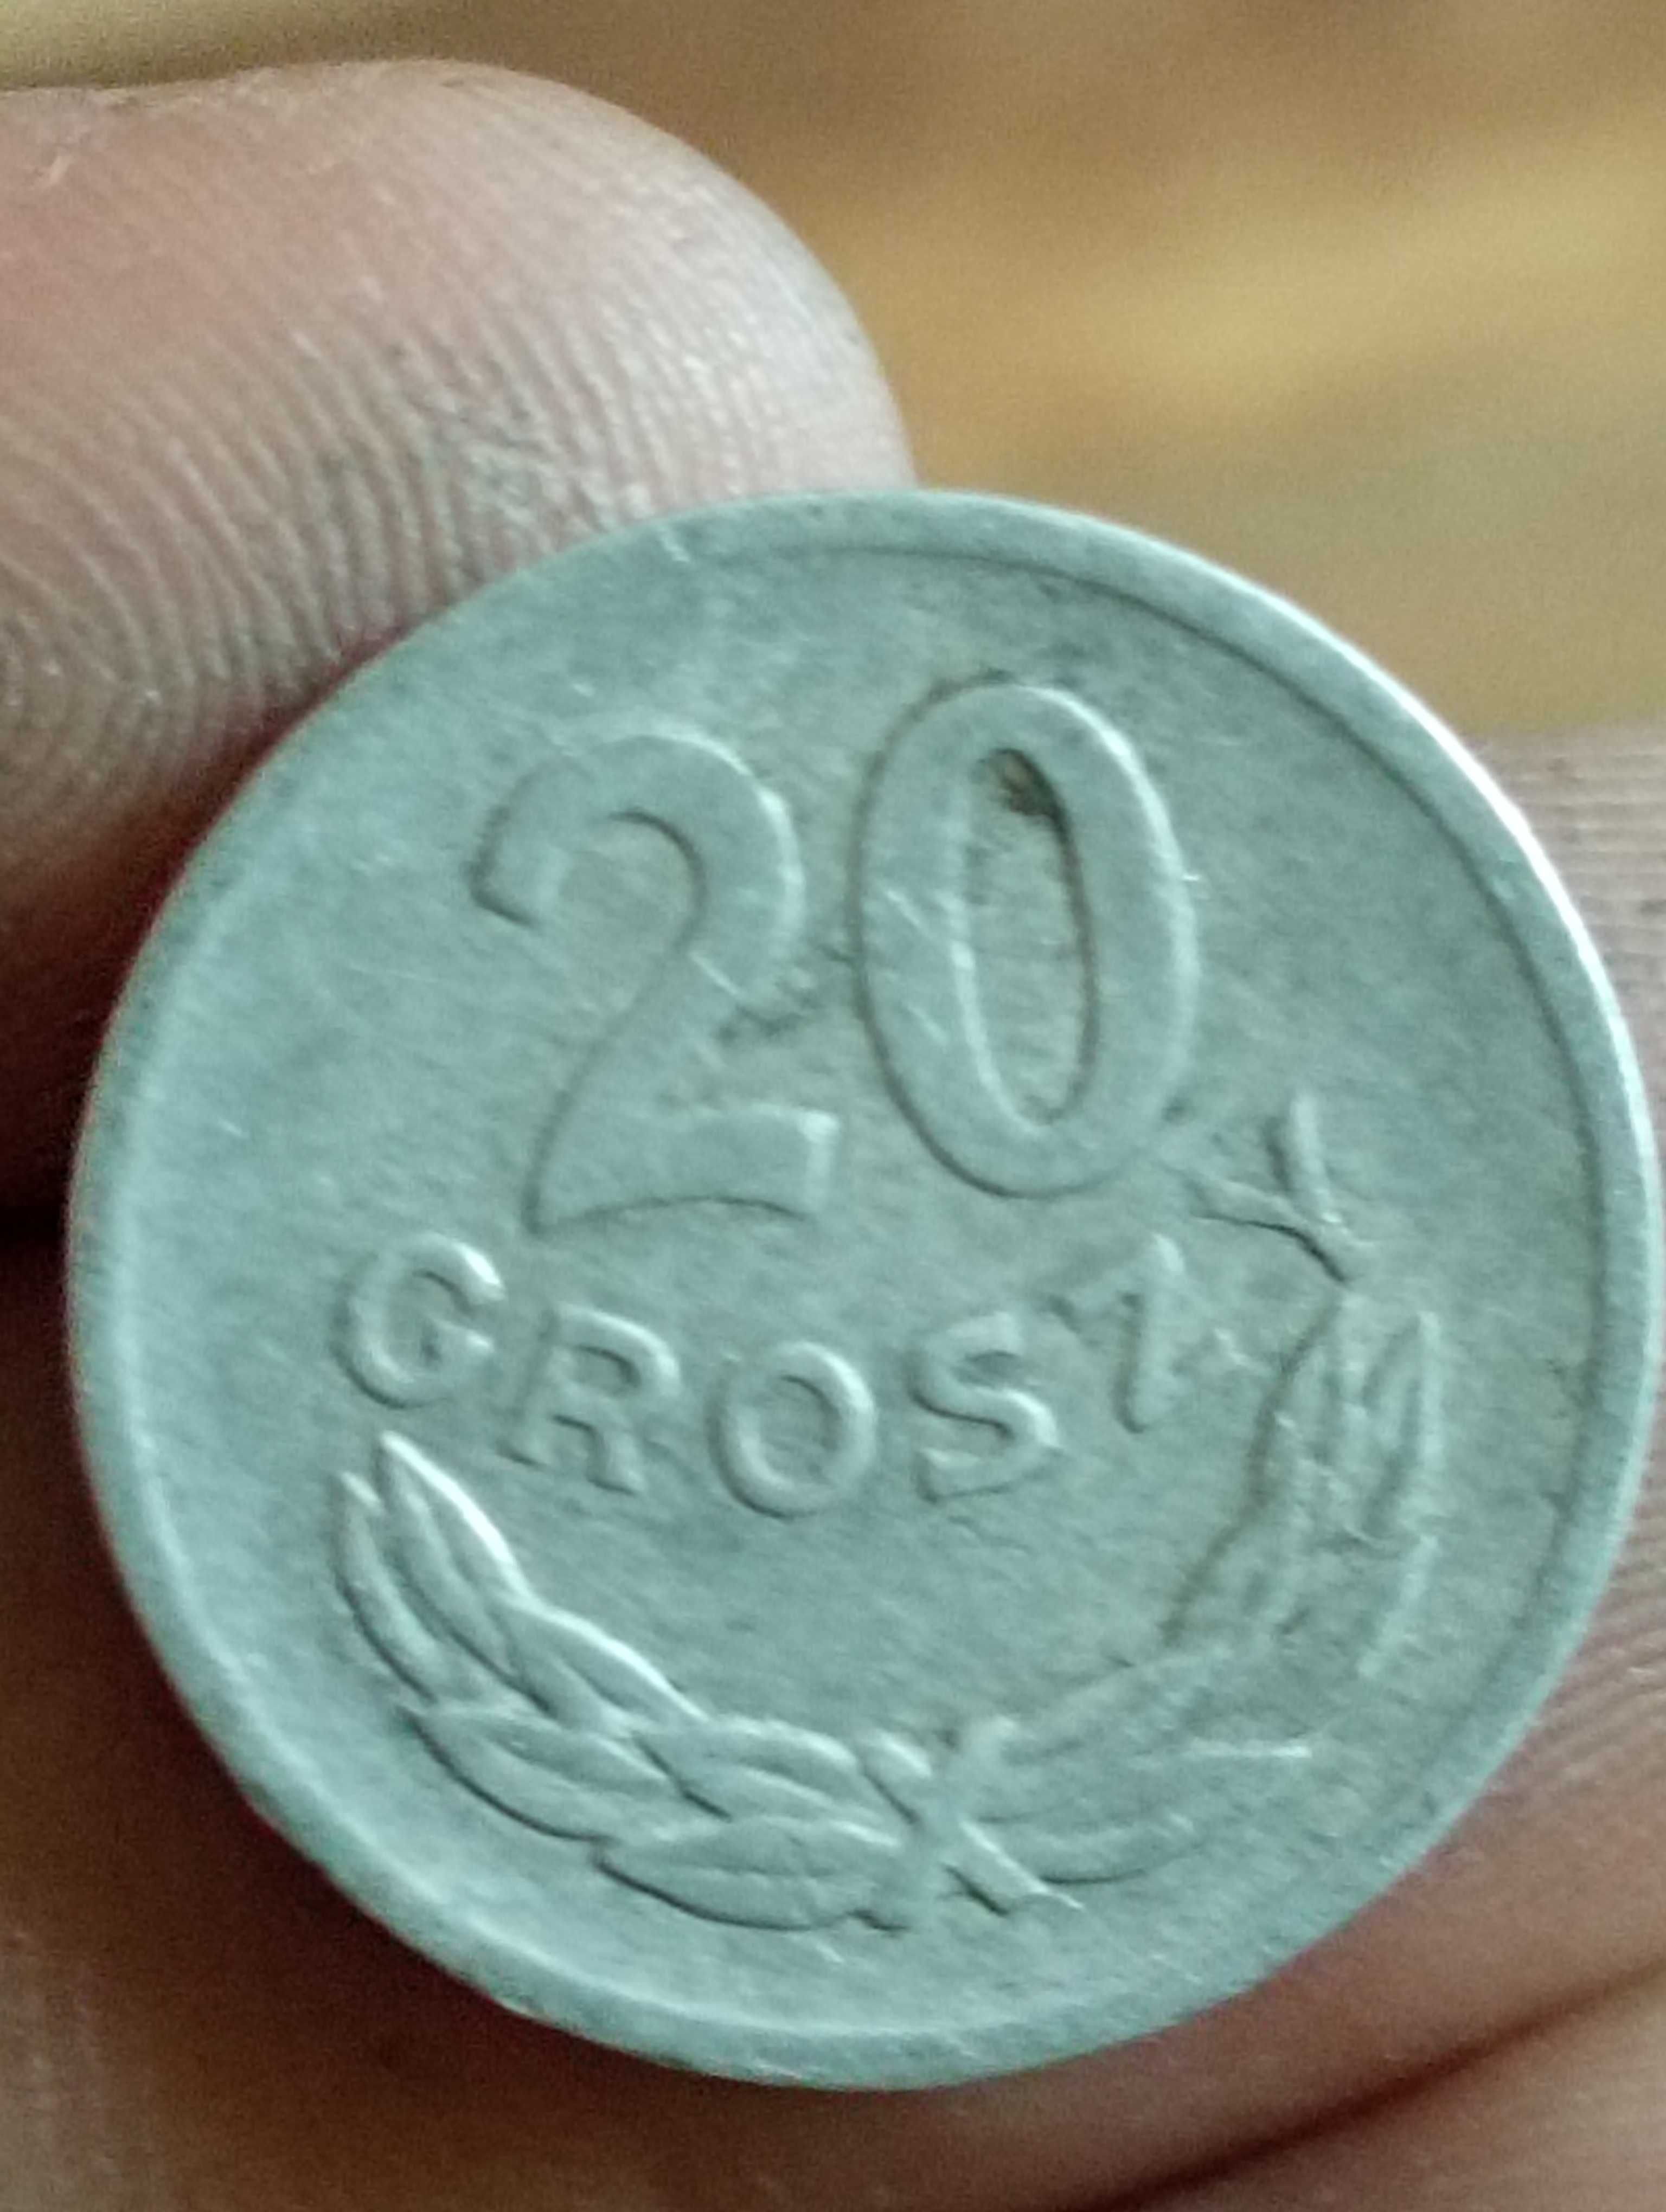 Sprzedam monete 20 groszy 1970 r